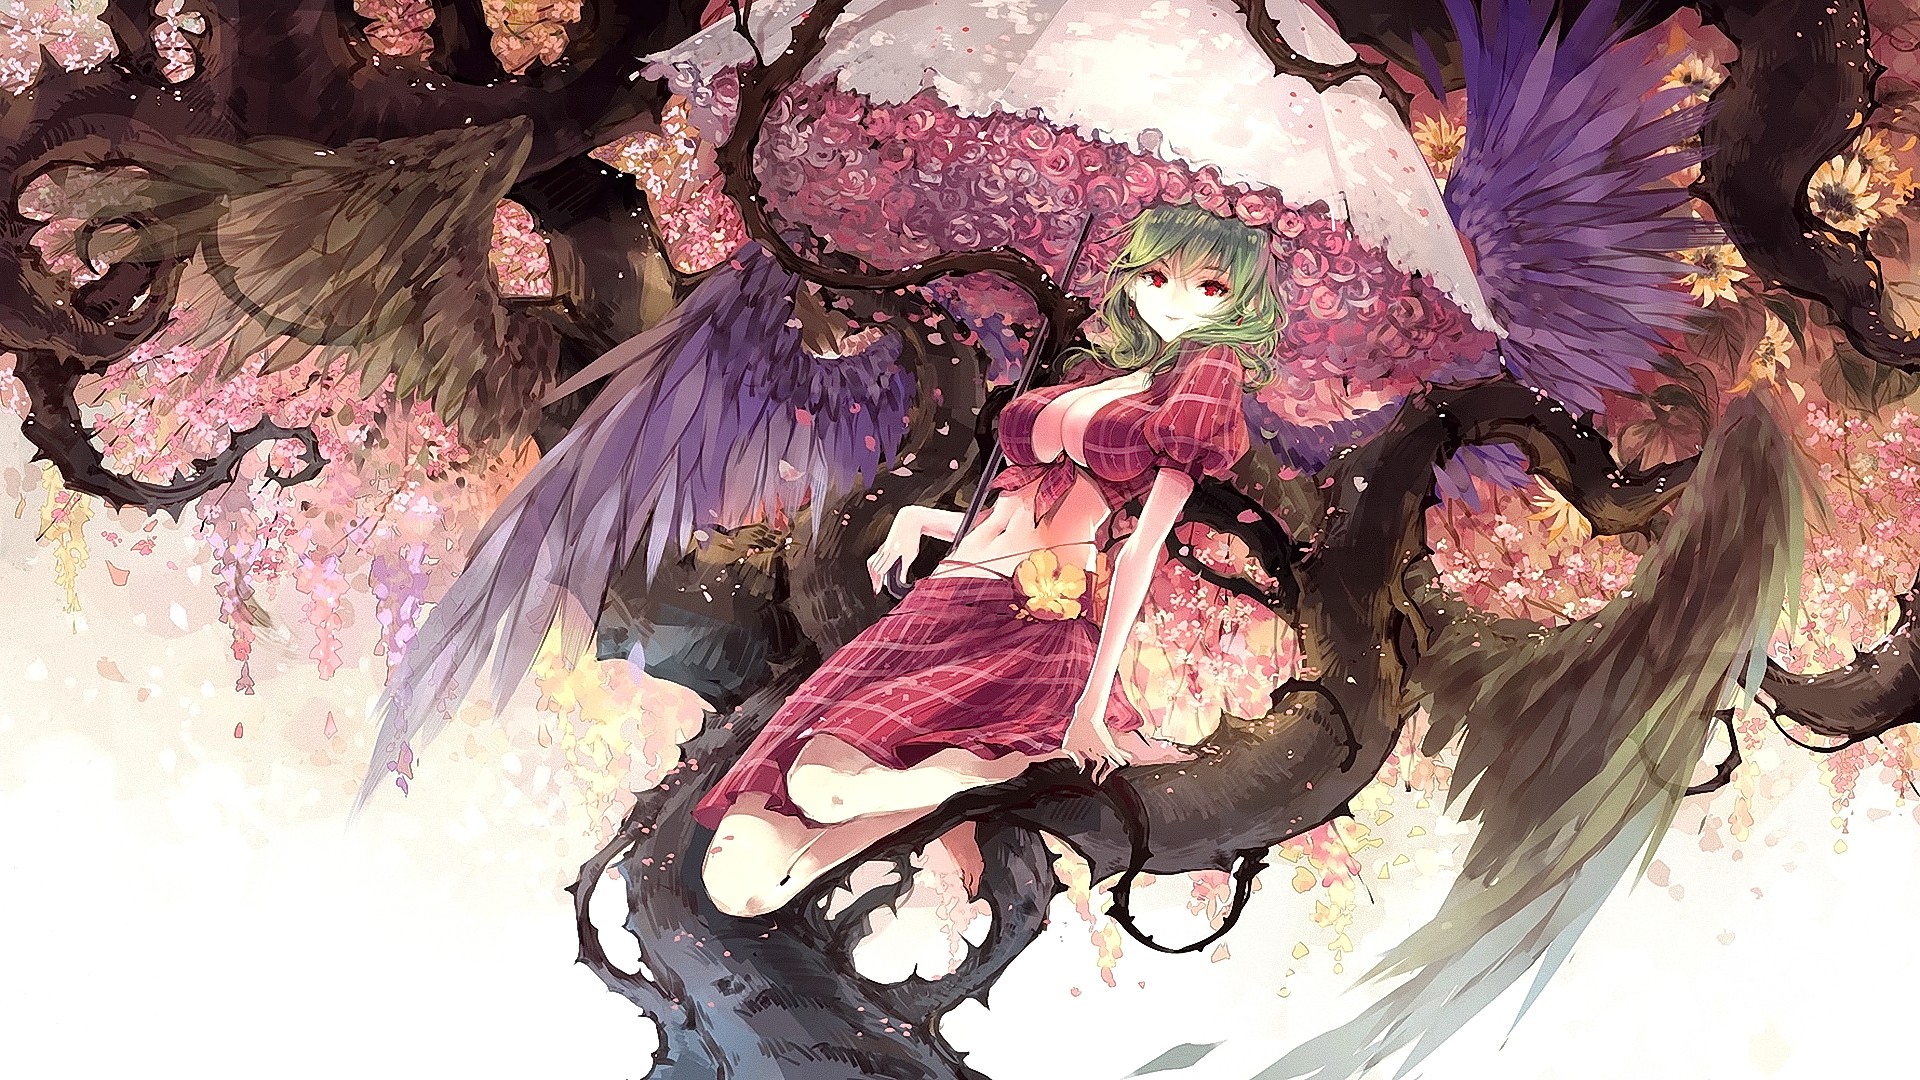 Anime Anime Girls Touhou Kazami Yuuka Wings Green Hair Red Eyes Umbrella Flowers Smiling Long Hair 1920x1080